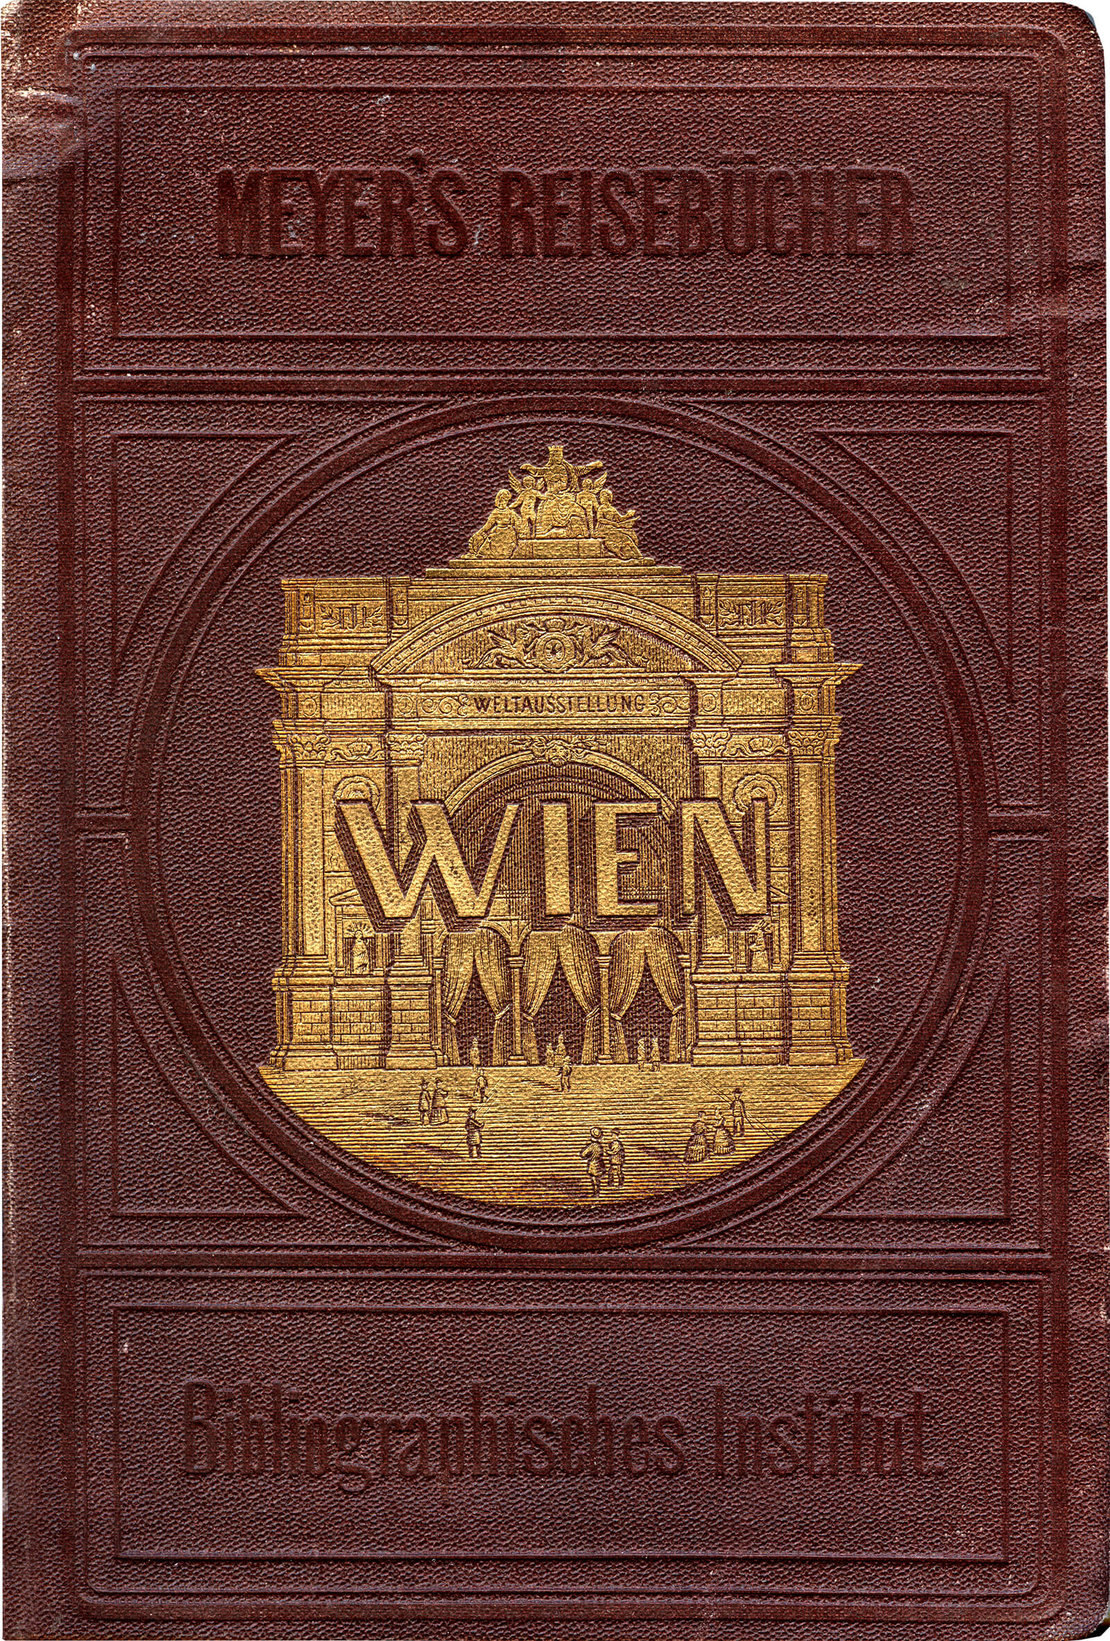 Cover des Wien-Führers aus der Reihe Meyer’s, 1873, Wienbibliothek im Rathaus 